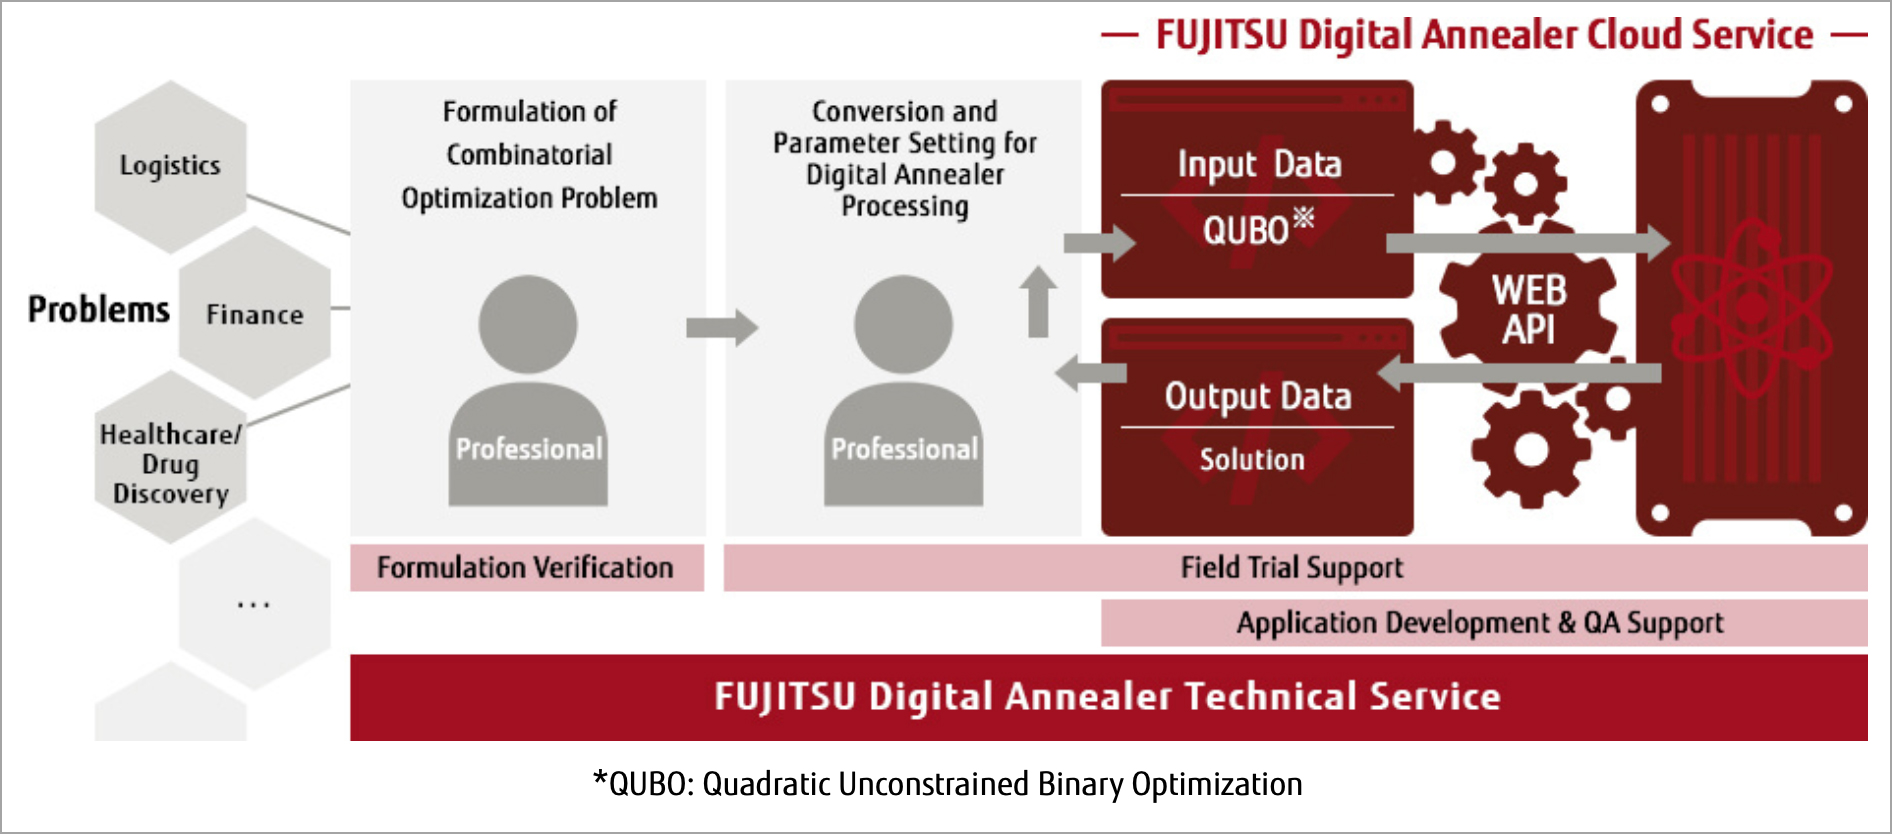 Fujitsu Digital Annealer end-to-end service